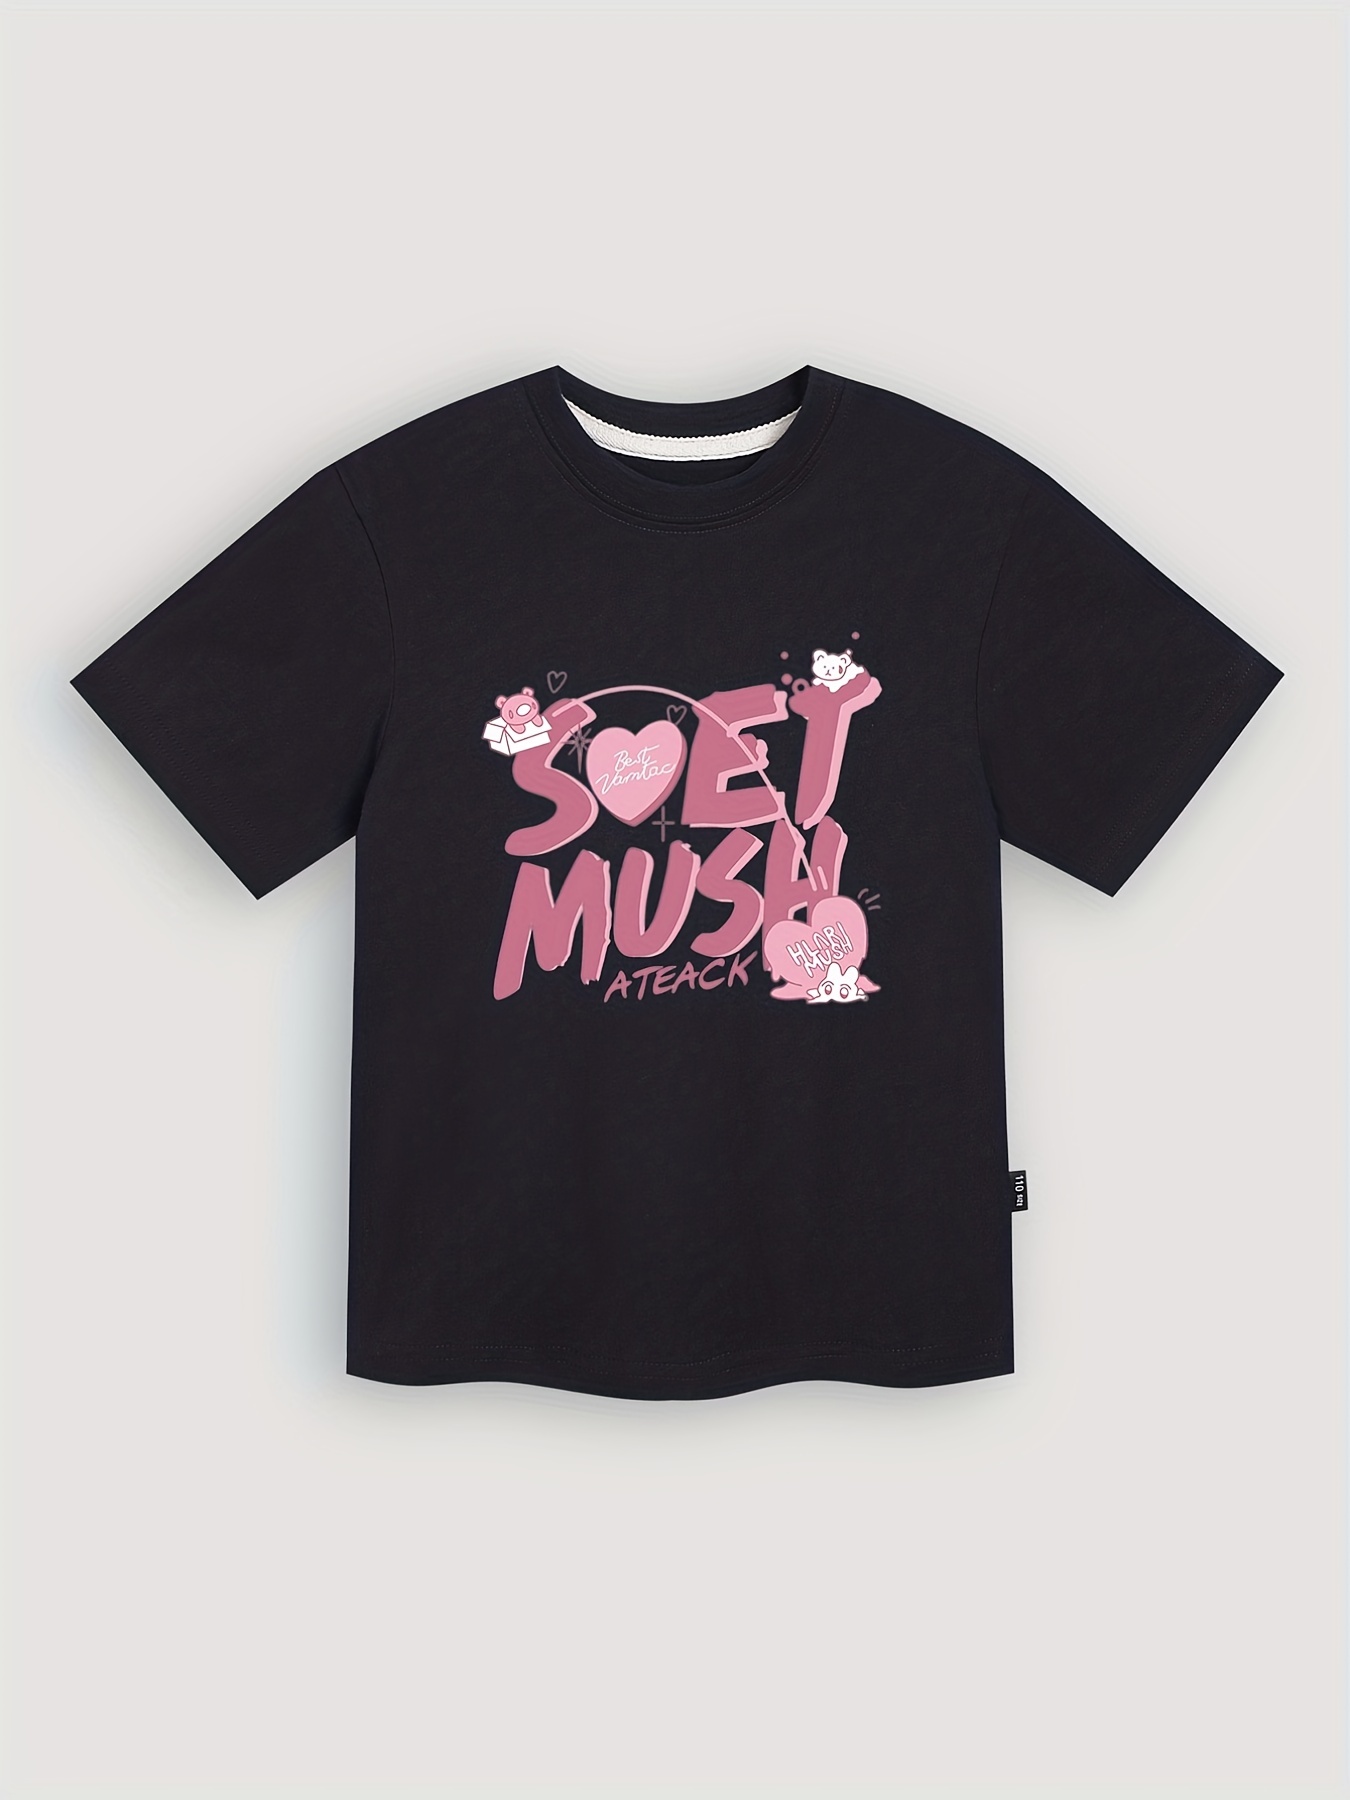 Girls' Letter ''soet Mush'' Graphic Short Sleeve T-shirt Tops